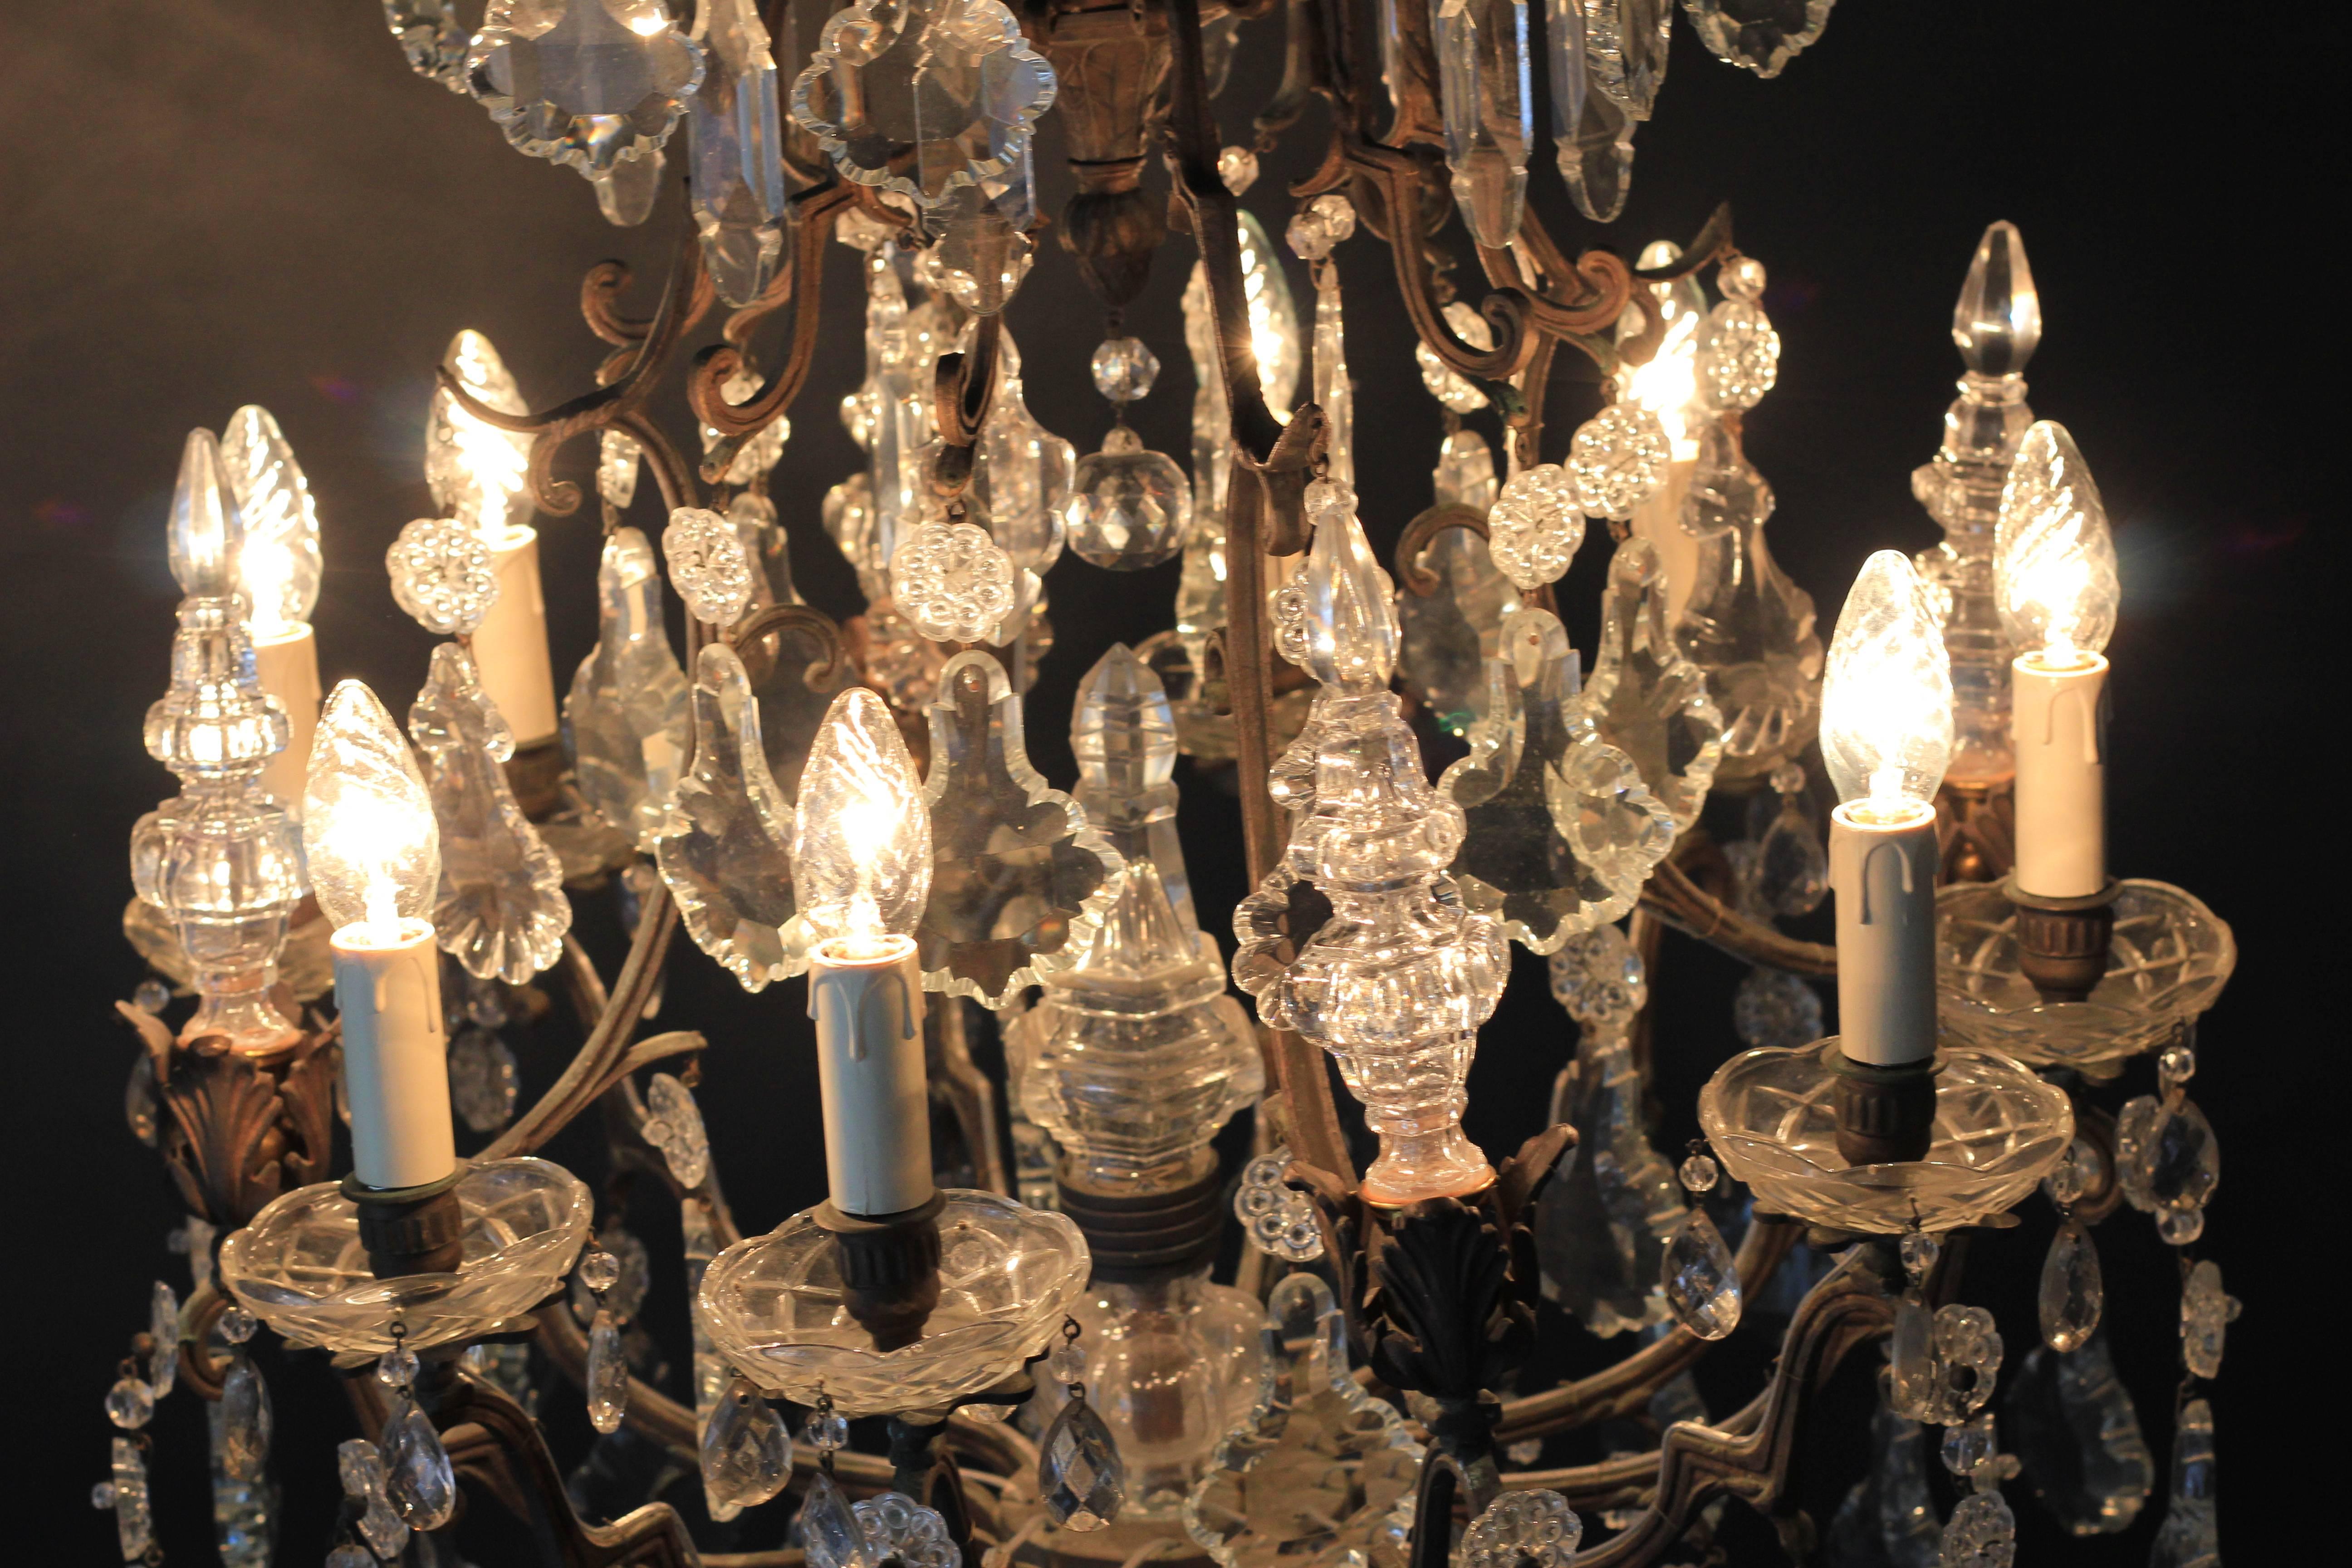 European Fine Rarity Crystal Chandelier 1920 Lustre Antique Ceiling Lamp Art Nouveau WoW